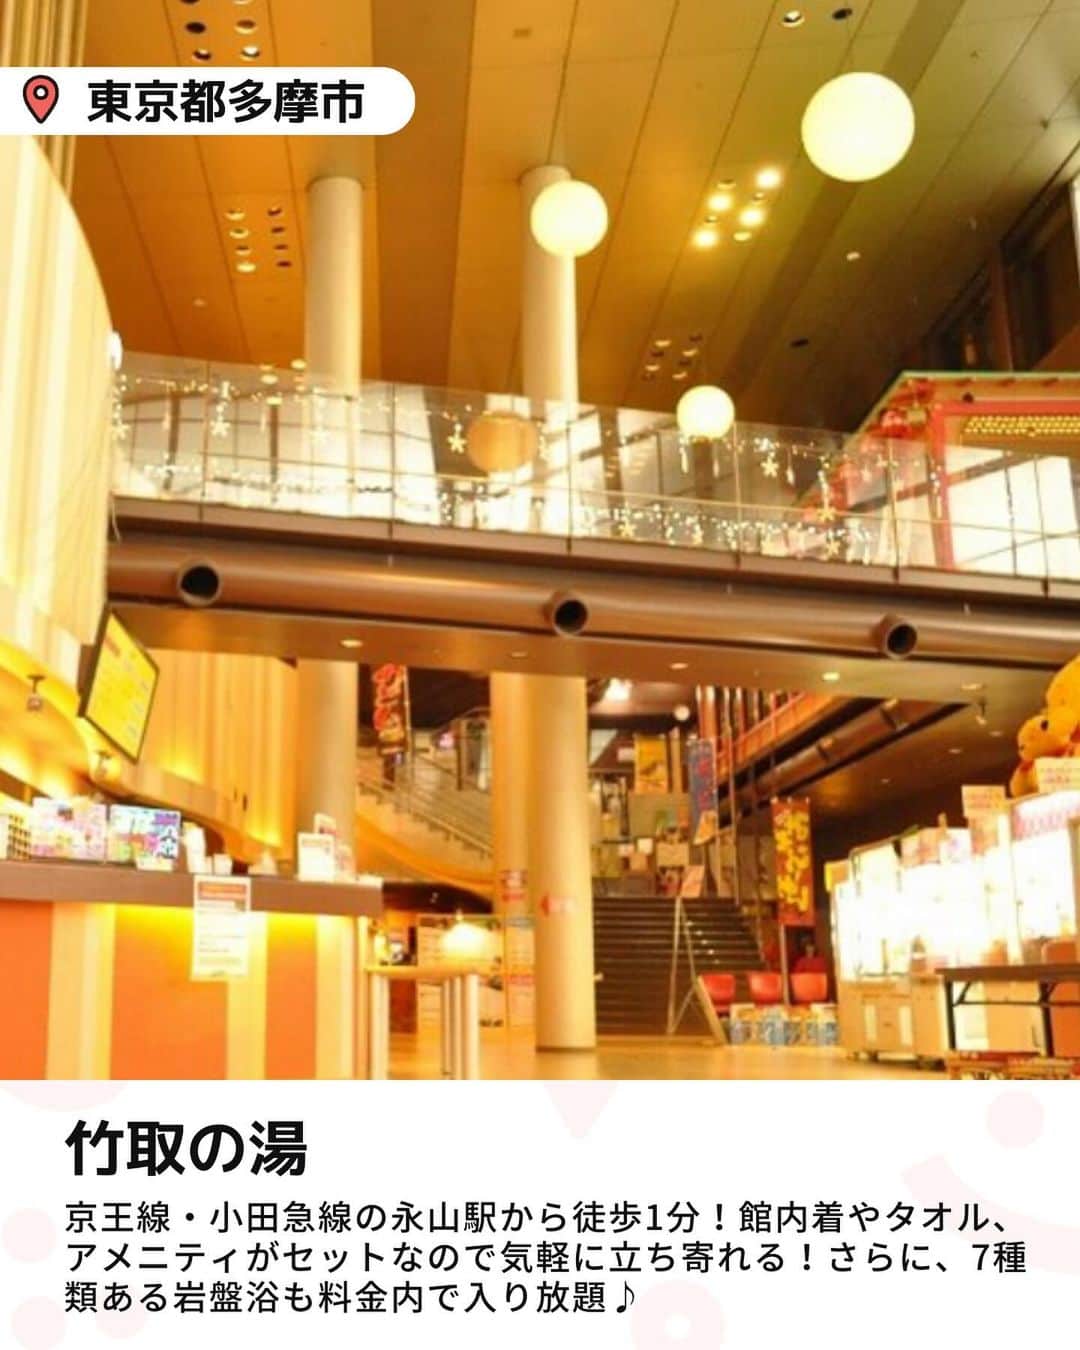 iko-yo（いこーよオフィシャル）さんのインスタグラム写真 - (iko-yo（いこーよオフィシャル）Instagram)「今回ピックアップしたのは「子どもも楽しめるスーパー銭湯6選」 @ikoyo_odekakeに他の投稿も！ ーーーーーーーーーーーーーーーーーー 📍 東京都多摩市 【竹取の湯】 #竹取の湯 最寄駅から徒歩1分でアクセスが良い！地下深層水を利用したお湯で、炭酸泉や露天風呂などが楽しめます。館内着やタオル、アメニティがセットになっているので、気軽に立ち寄れます。7種類ある岩盤浴も、料金内で入り放題！施設内にはキッズコーナーやアミューズメントコーナーなども！なかでも人気のボルダリングは、小学生以下なら無料！  📍 神奈川県横浜市 【RAKU SPA 鶴見】 #らくスパ鶴見 14種類ものお風呂とサウナが揃っています！ユニークな舟形の露天風呂や、子供も利用できる低温の岩盤浴など、家族で楽しめる工夫が盛りだくさん！館内には、複数のくつろぎスペースのほか、コミックコーナーやキッズコーナーも！  📍 神奈川県横浜市 【港北天然温泉ゆったりCOco】 #港北天然温泉ゆったりcoco 炭酸風呂やハーブ湯、ミルキーバスなど男女合わせて20種類のお風呂が楽しめる！館内には、ボールプールやネット遊具、マット敷きのキッズコーナー、マンガ・絵本コーナーなど、子供が遊べるスペースが充実。子供を見守りながら、ママパパはリラックスできます。  📍 千葉県浦安市 【大江戸温泉物語 浦安万華郷】 #浦安万華郷 天然温泉をじっくりと堪能できる内風呂と露天風呂のほか、家族一緒に楽しめる水着露天風呂「スパワニ」が人気のスポット！館内にはフードコートやマッサージのほか、おもちゃのあるキッズコーナーやマンガコーナー、縁日気分で輪投げやダーツなどが楽しめるコーナーなども！  📍 千葉県佐倉市 【ウェルネスプラザ アクア・ユーカリ】 #ウェルネスプラザ アクアユーカリ 「和」と「地中海」をイメージしたさまざまなお風呂が楽しめる！ファミリーに人気の「温浴プール」では、水着着用でプール遊びが楽しめます。1年中泳げる屋内ゾーンには、メインプールのほか、水深15cmの「ジャバジャバキッズ」もあるので、小さな子どもでも安心。  📍 埼玉県草加市 【竜泉寺の湯 草加谷塚店】 #竜泉寺の湯 天然温泉や高濃度炭酸泉、アロマ岩盤浴など14種類のお風呂と2種類のサウナ、7種類の岩盤浴を備えた温泉です！蛍をイメージしたライトアップが幻想的な「ほたるの炭酸泉」は子供に大人気！　おむつのとれていない乳幼児も入浴できる天然温泉「ちびっこの湯」もあるので、小さな子ども連れでも安心！  ※2023年9月15日時点の情報です。 最新の情報は公式HPや「いこーよ」サイトでご確認ください。 ーーーーーーーーーーーーーーーーーーー おでかけ情報量は日本最大級！ 子どもとお出かけ情報サイト「いこーよ」 「親子でおでかけしたい場所」をご紹介させていただいています！  お子さんとのおでかけの思い出の写真を、このアカウントをフォローの上#いこーよ #いこーよおでかけ部 をつけてぜひ投稿してください。魅力的な写真は、いこーよ公式SNSで紹介させていただきます！  募集中タグ#いこーよ #いこーよおでかけ部  「子どもと行きたい！」と思ったら保存が便利！ プロフィールのURLから「いこーよ」のサイトに行くと、他の投稿やオトクな情報などが載っています♪ ☞ @ikoyo_odekake  #いこーよ #お出かけ #おでかけ #お出かけスポット #子連れ #こどものいる暮らし #子連れスポット#子連れおでかけ #いこーよおでかけ部 #温泉#スパ#スーパー銭湯#子連れ温泉#お風呂#日帰り温泉#サウナ#温泉デビュー」10月19日 18時13分 - ikoyo_odekake